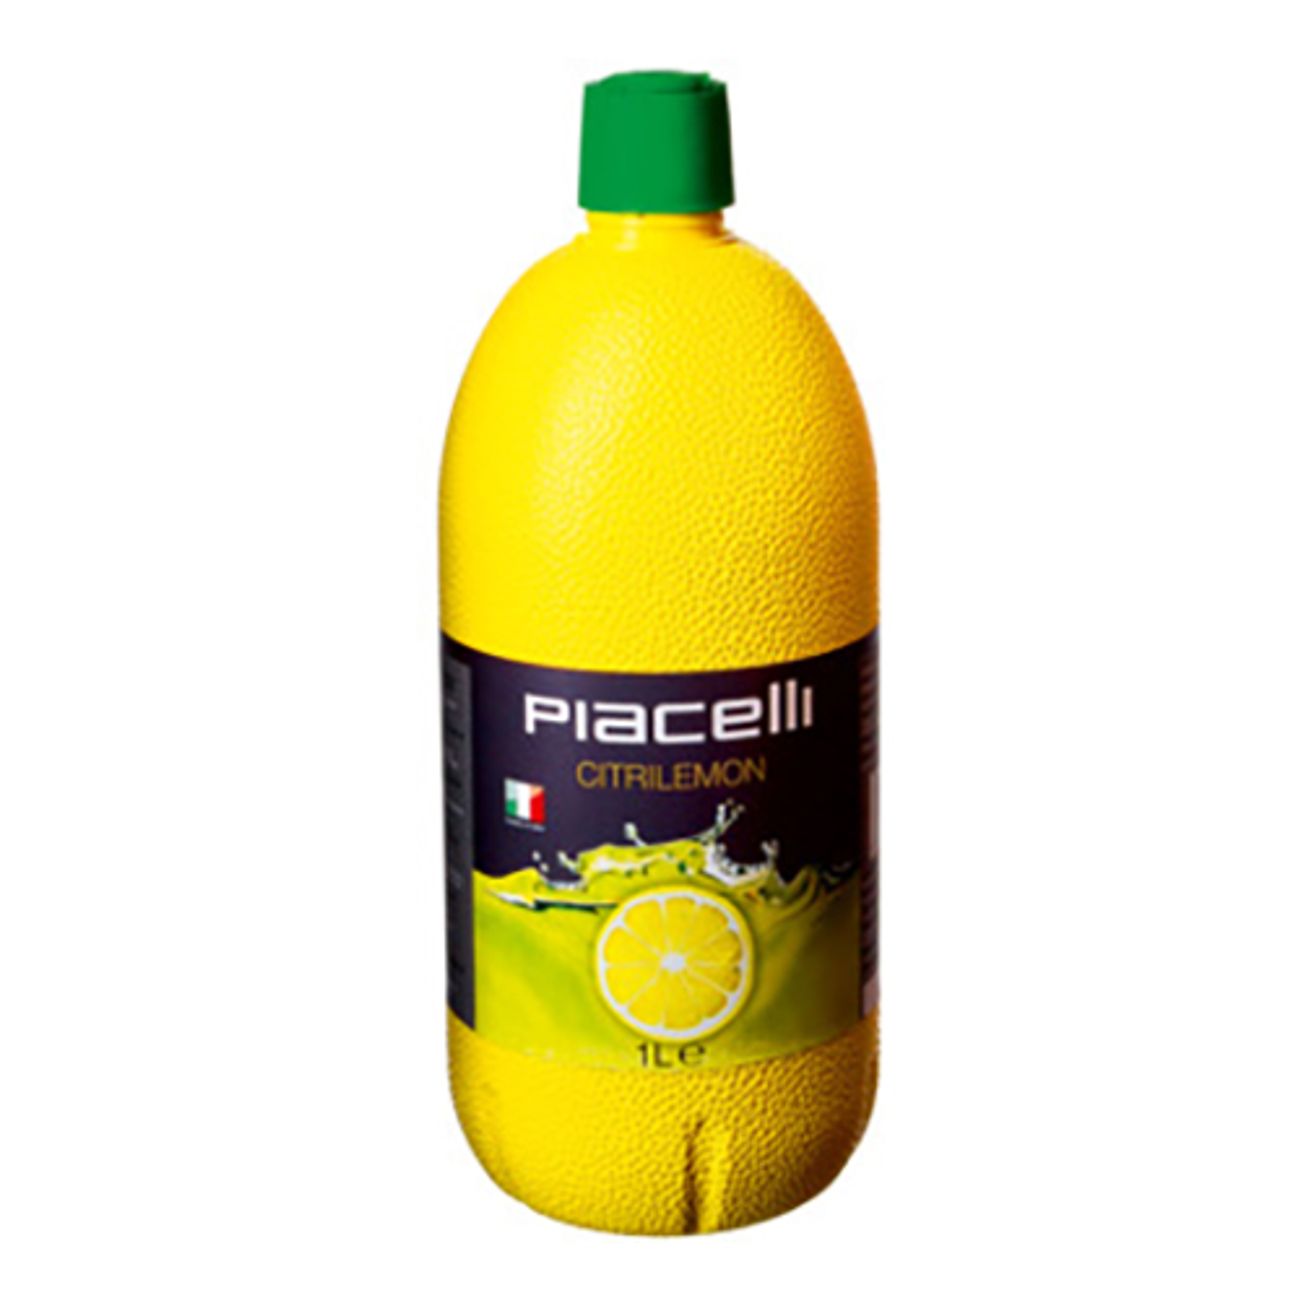 piacelli-lemon-juice-koncentrat-55222-2